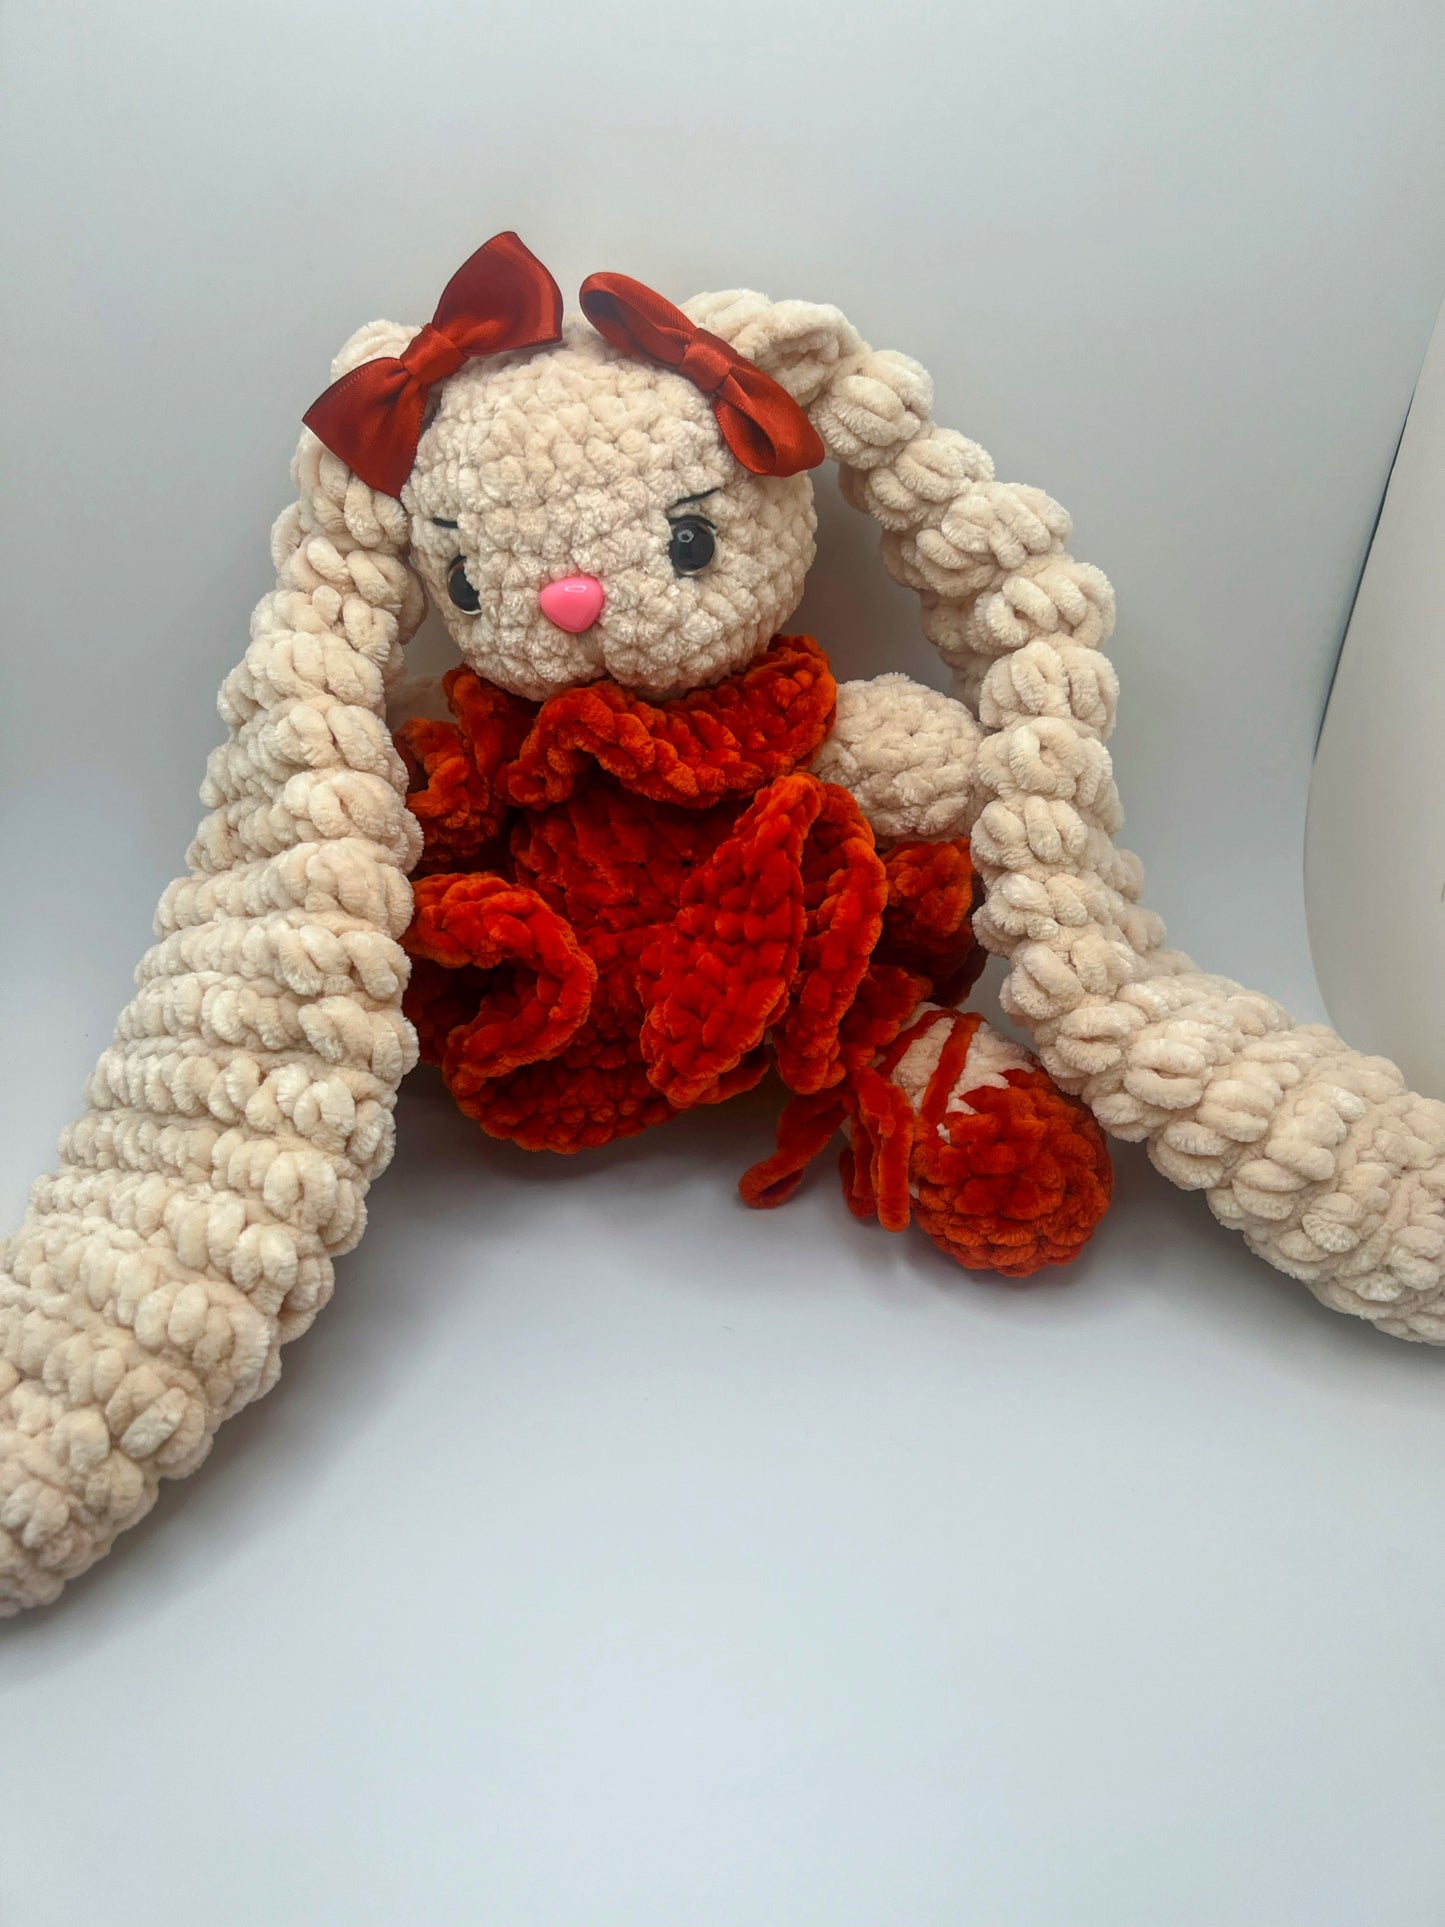 Stuffed Cute Cuddly Bunny 🐰 (Green & Orange) - Crochet Knitted Amigurumi Toy